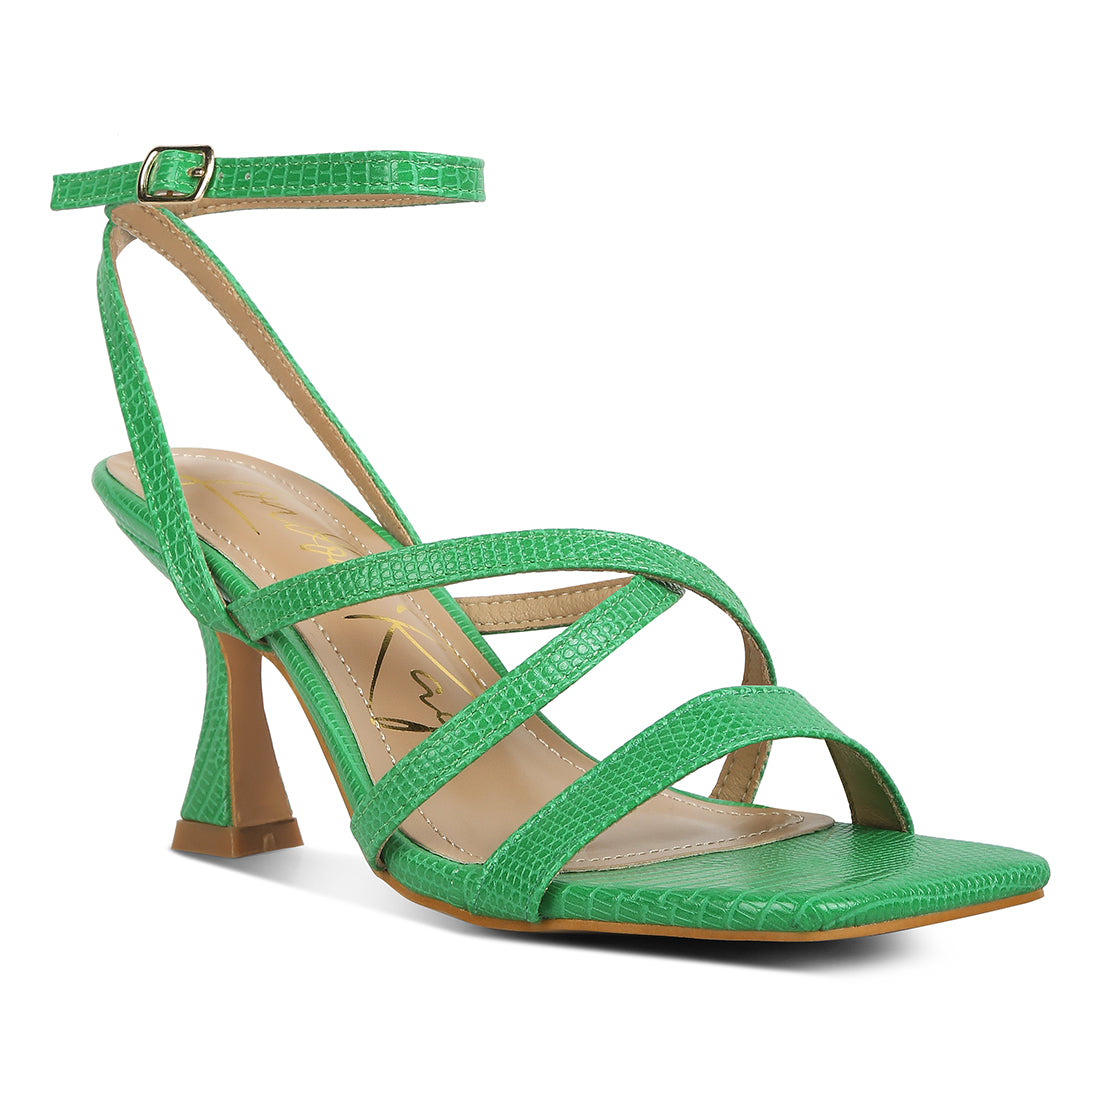 spool heel sandals#color_green